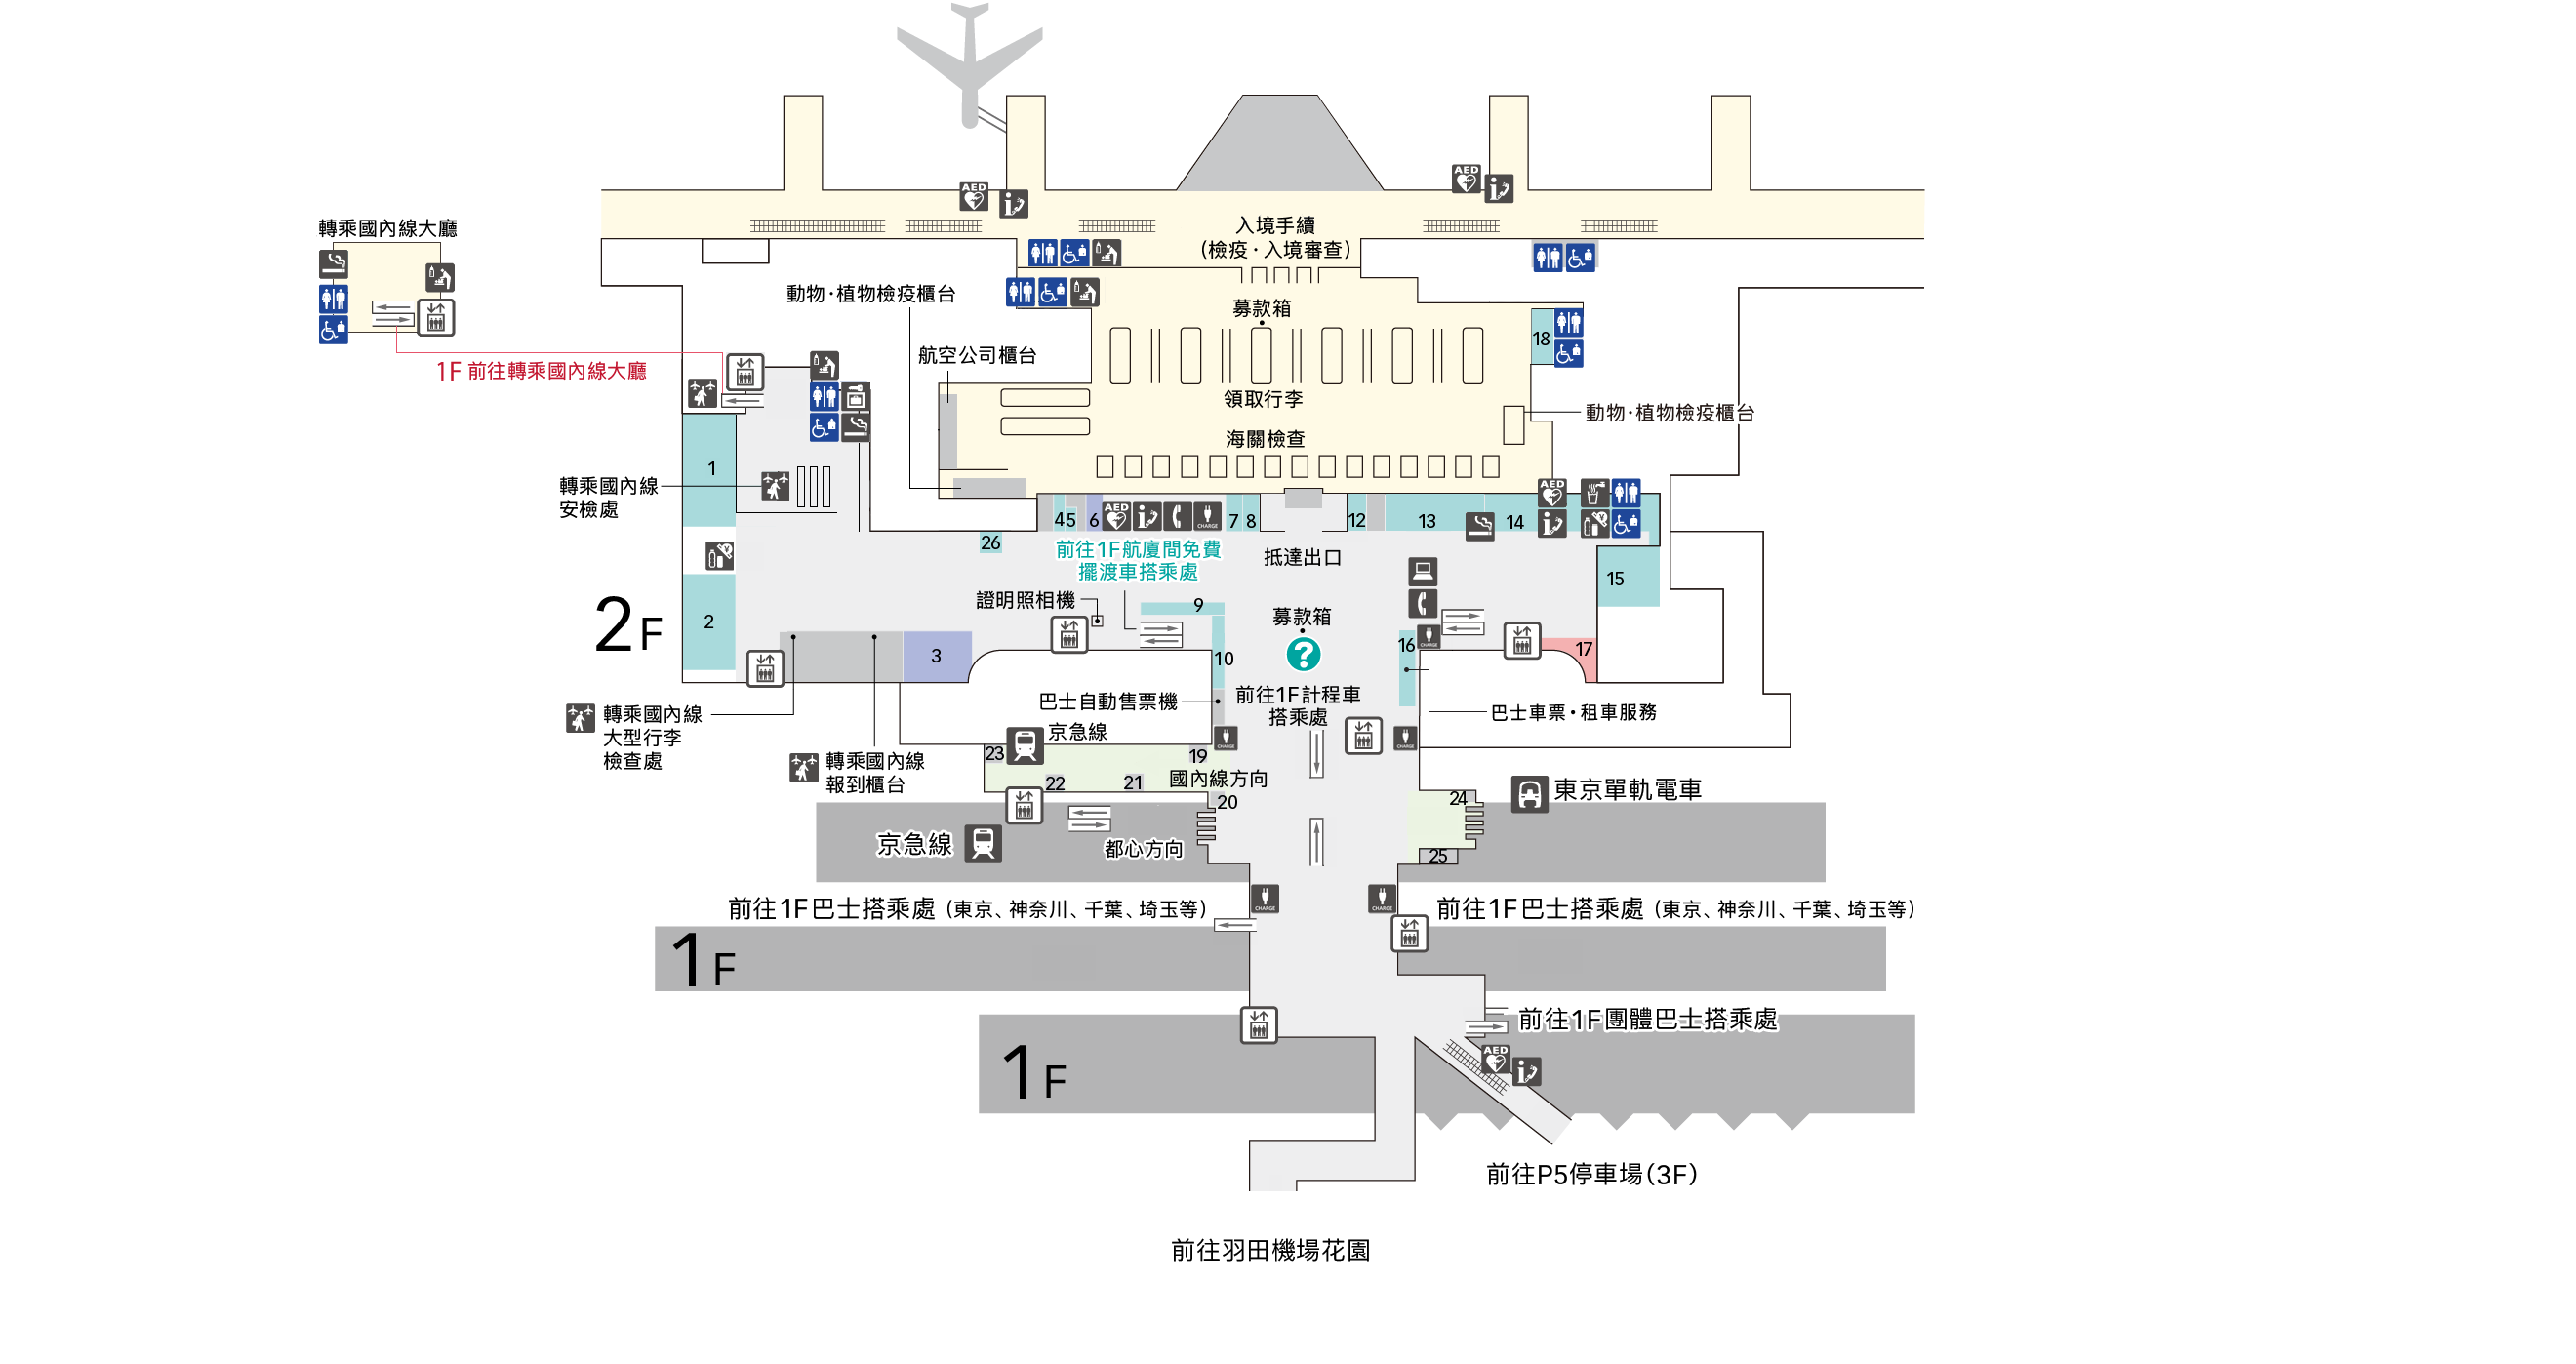 2F入境大廳樓層圖